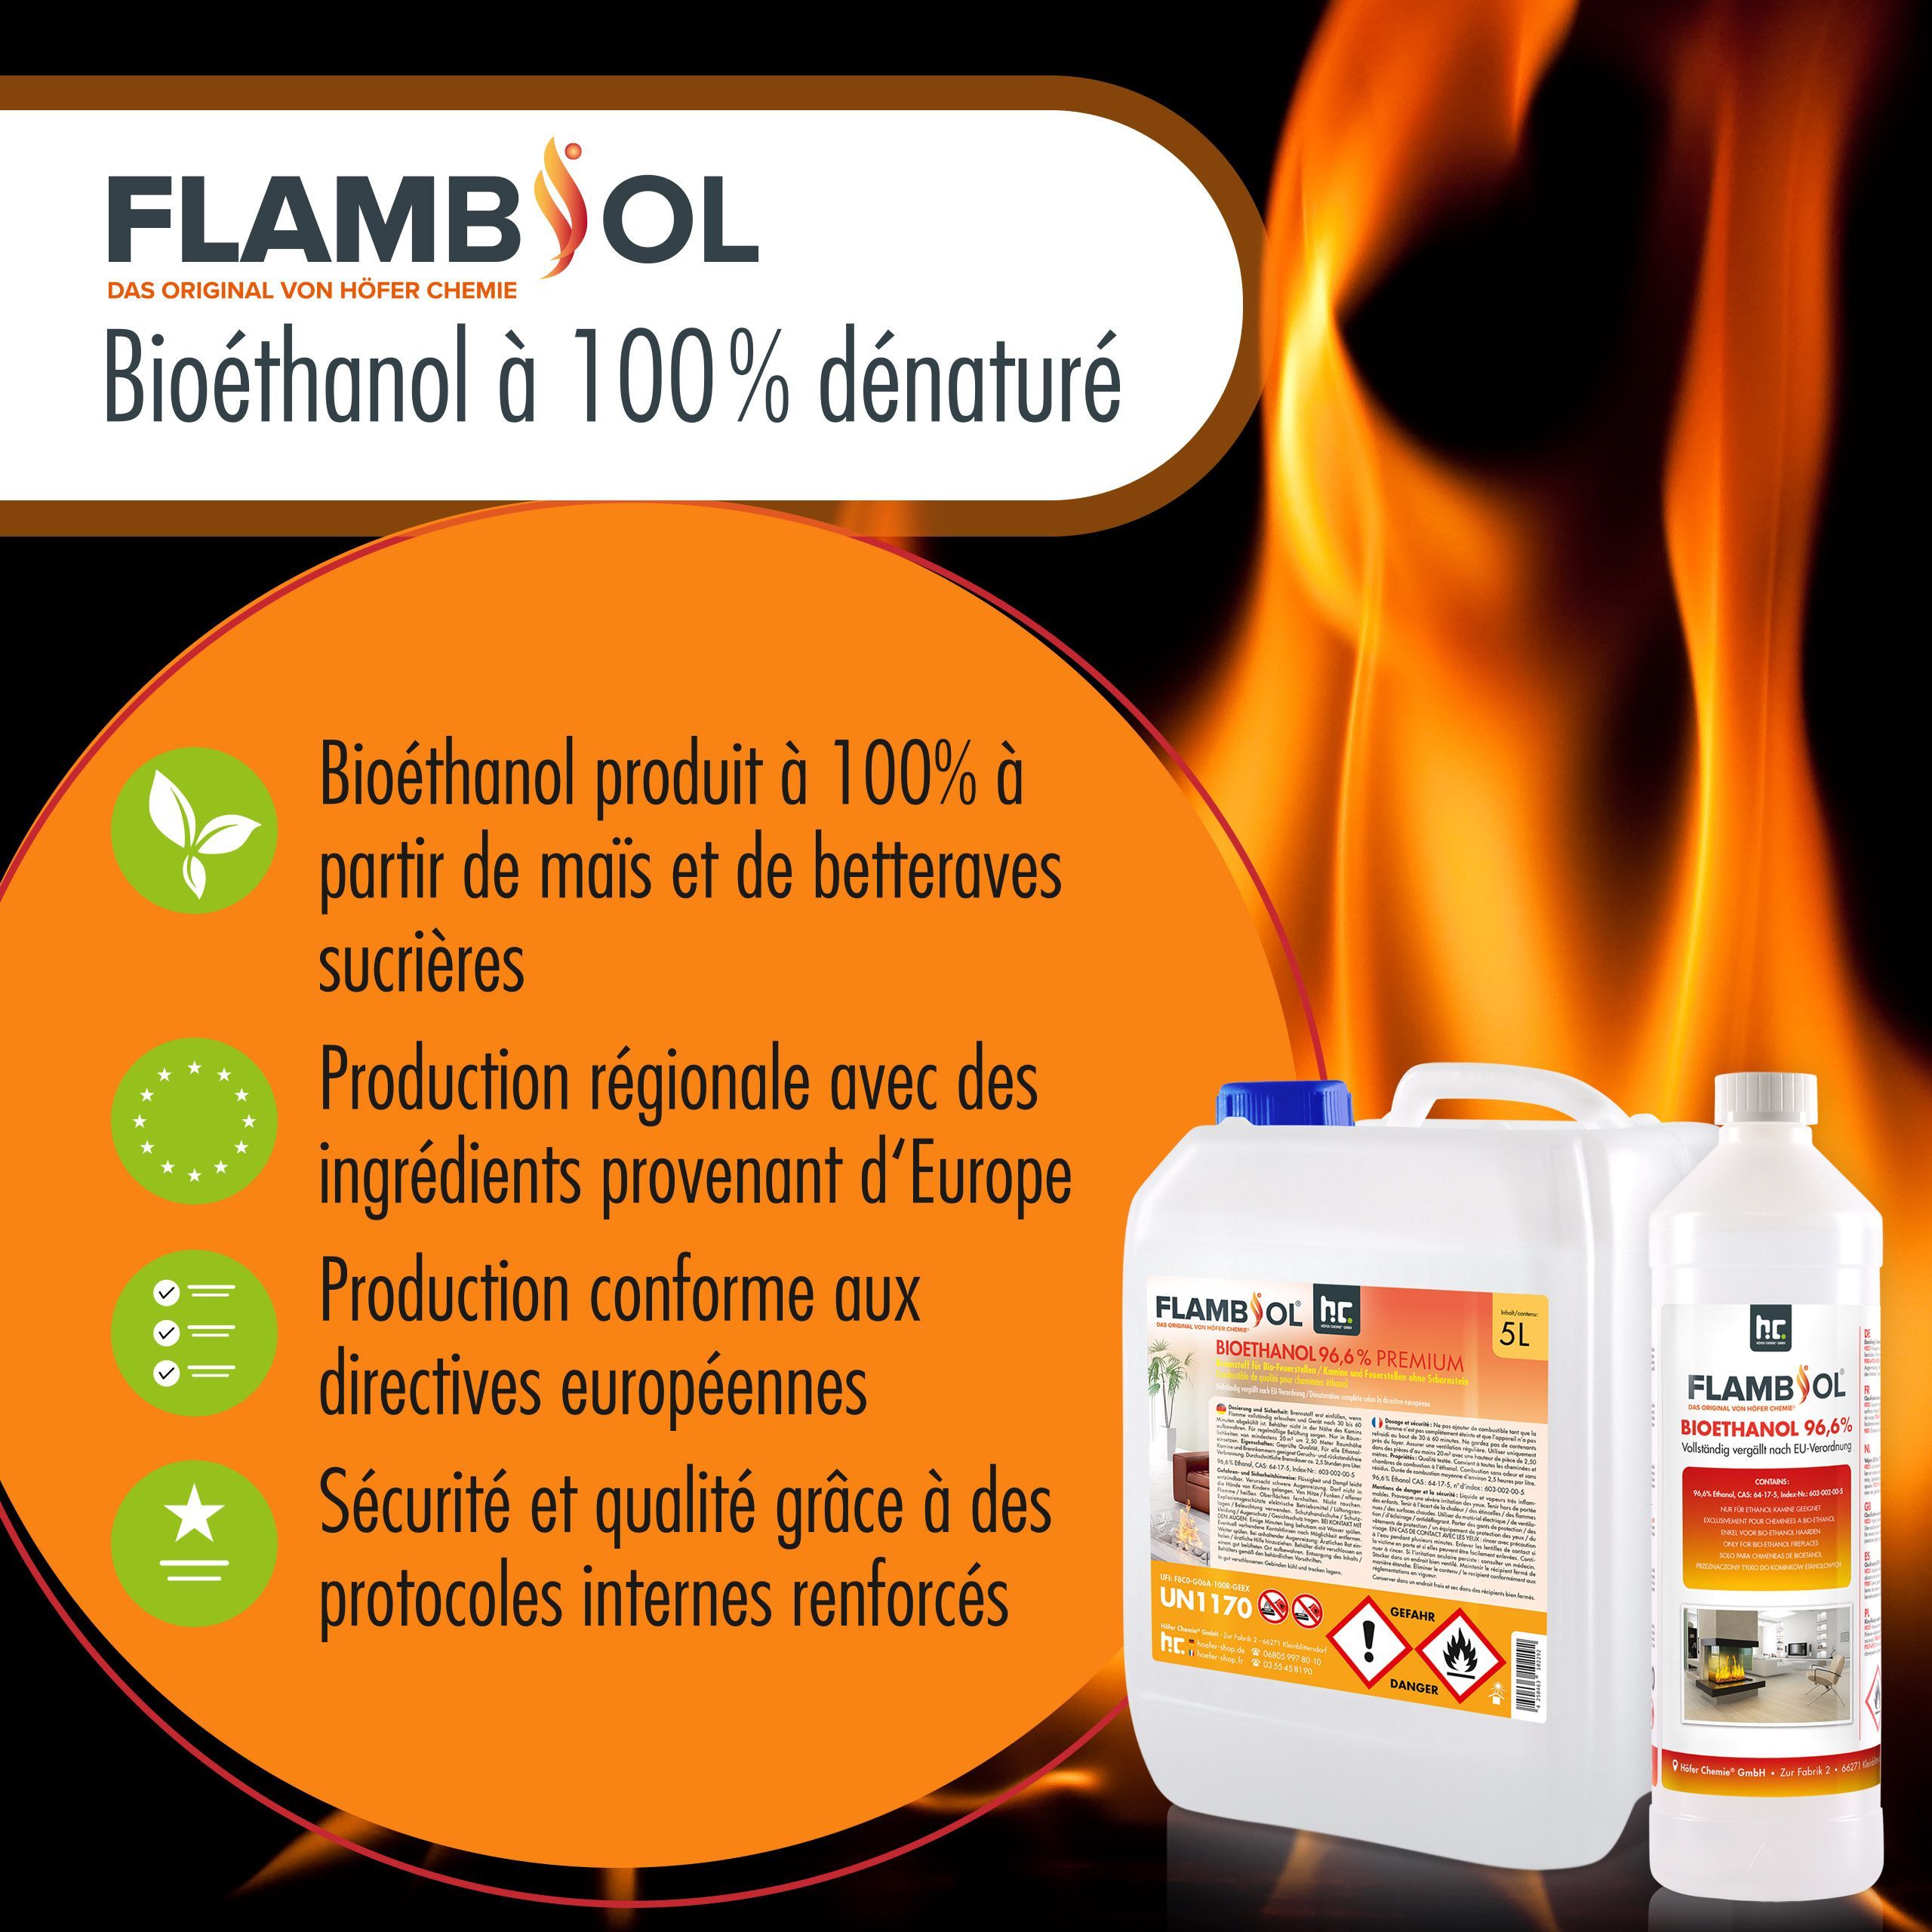 20 L FLAMBIOL® Bioethanol 96,6% Premium für Ethanolkamin in Kanistern